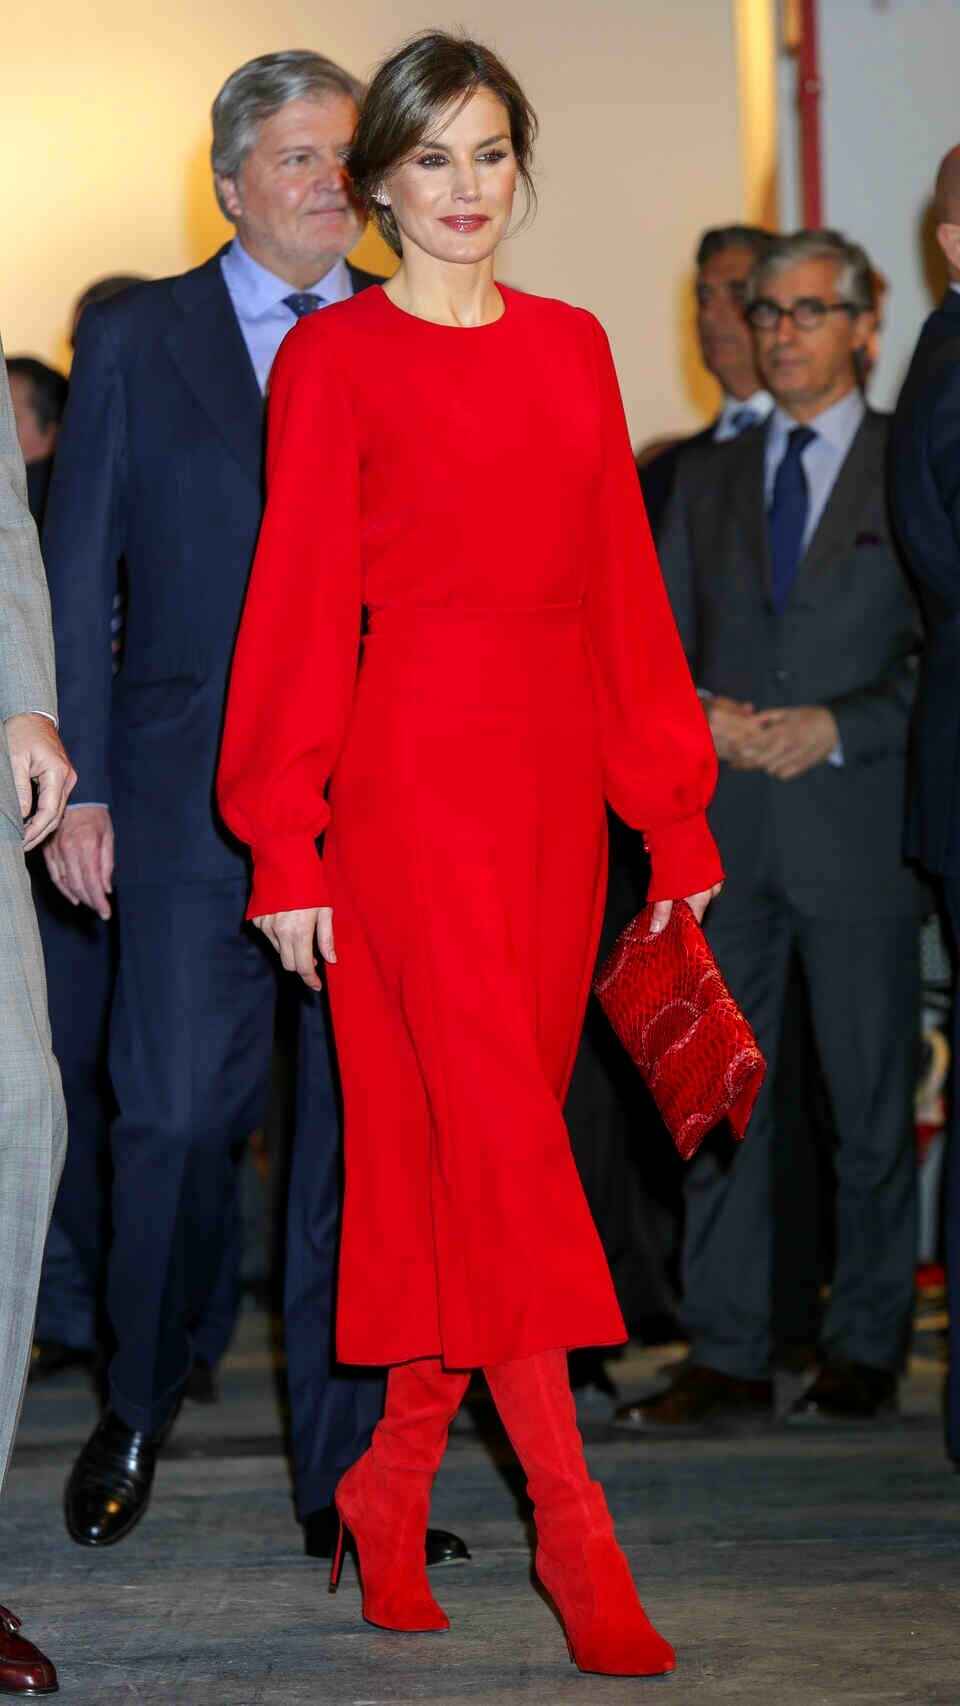 La reina Letizia en la edición de ARCOMadrid 2018 con 'look' monocolor rojo.